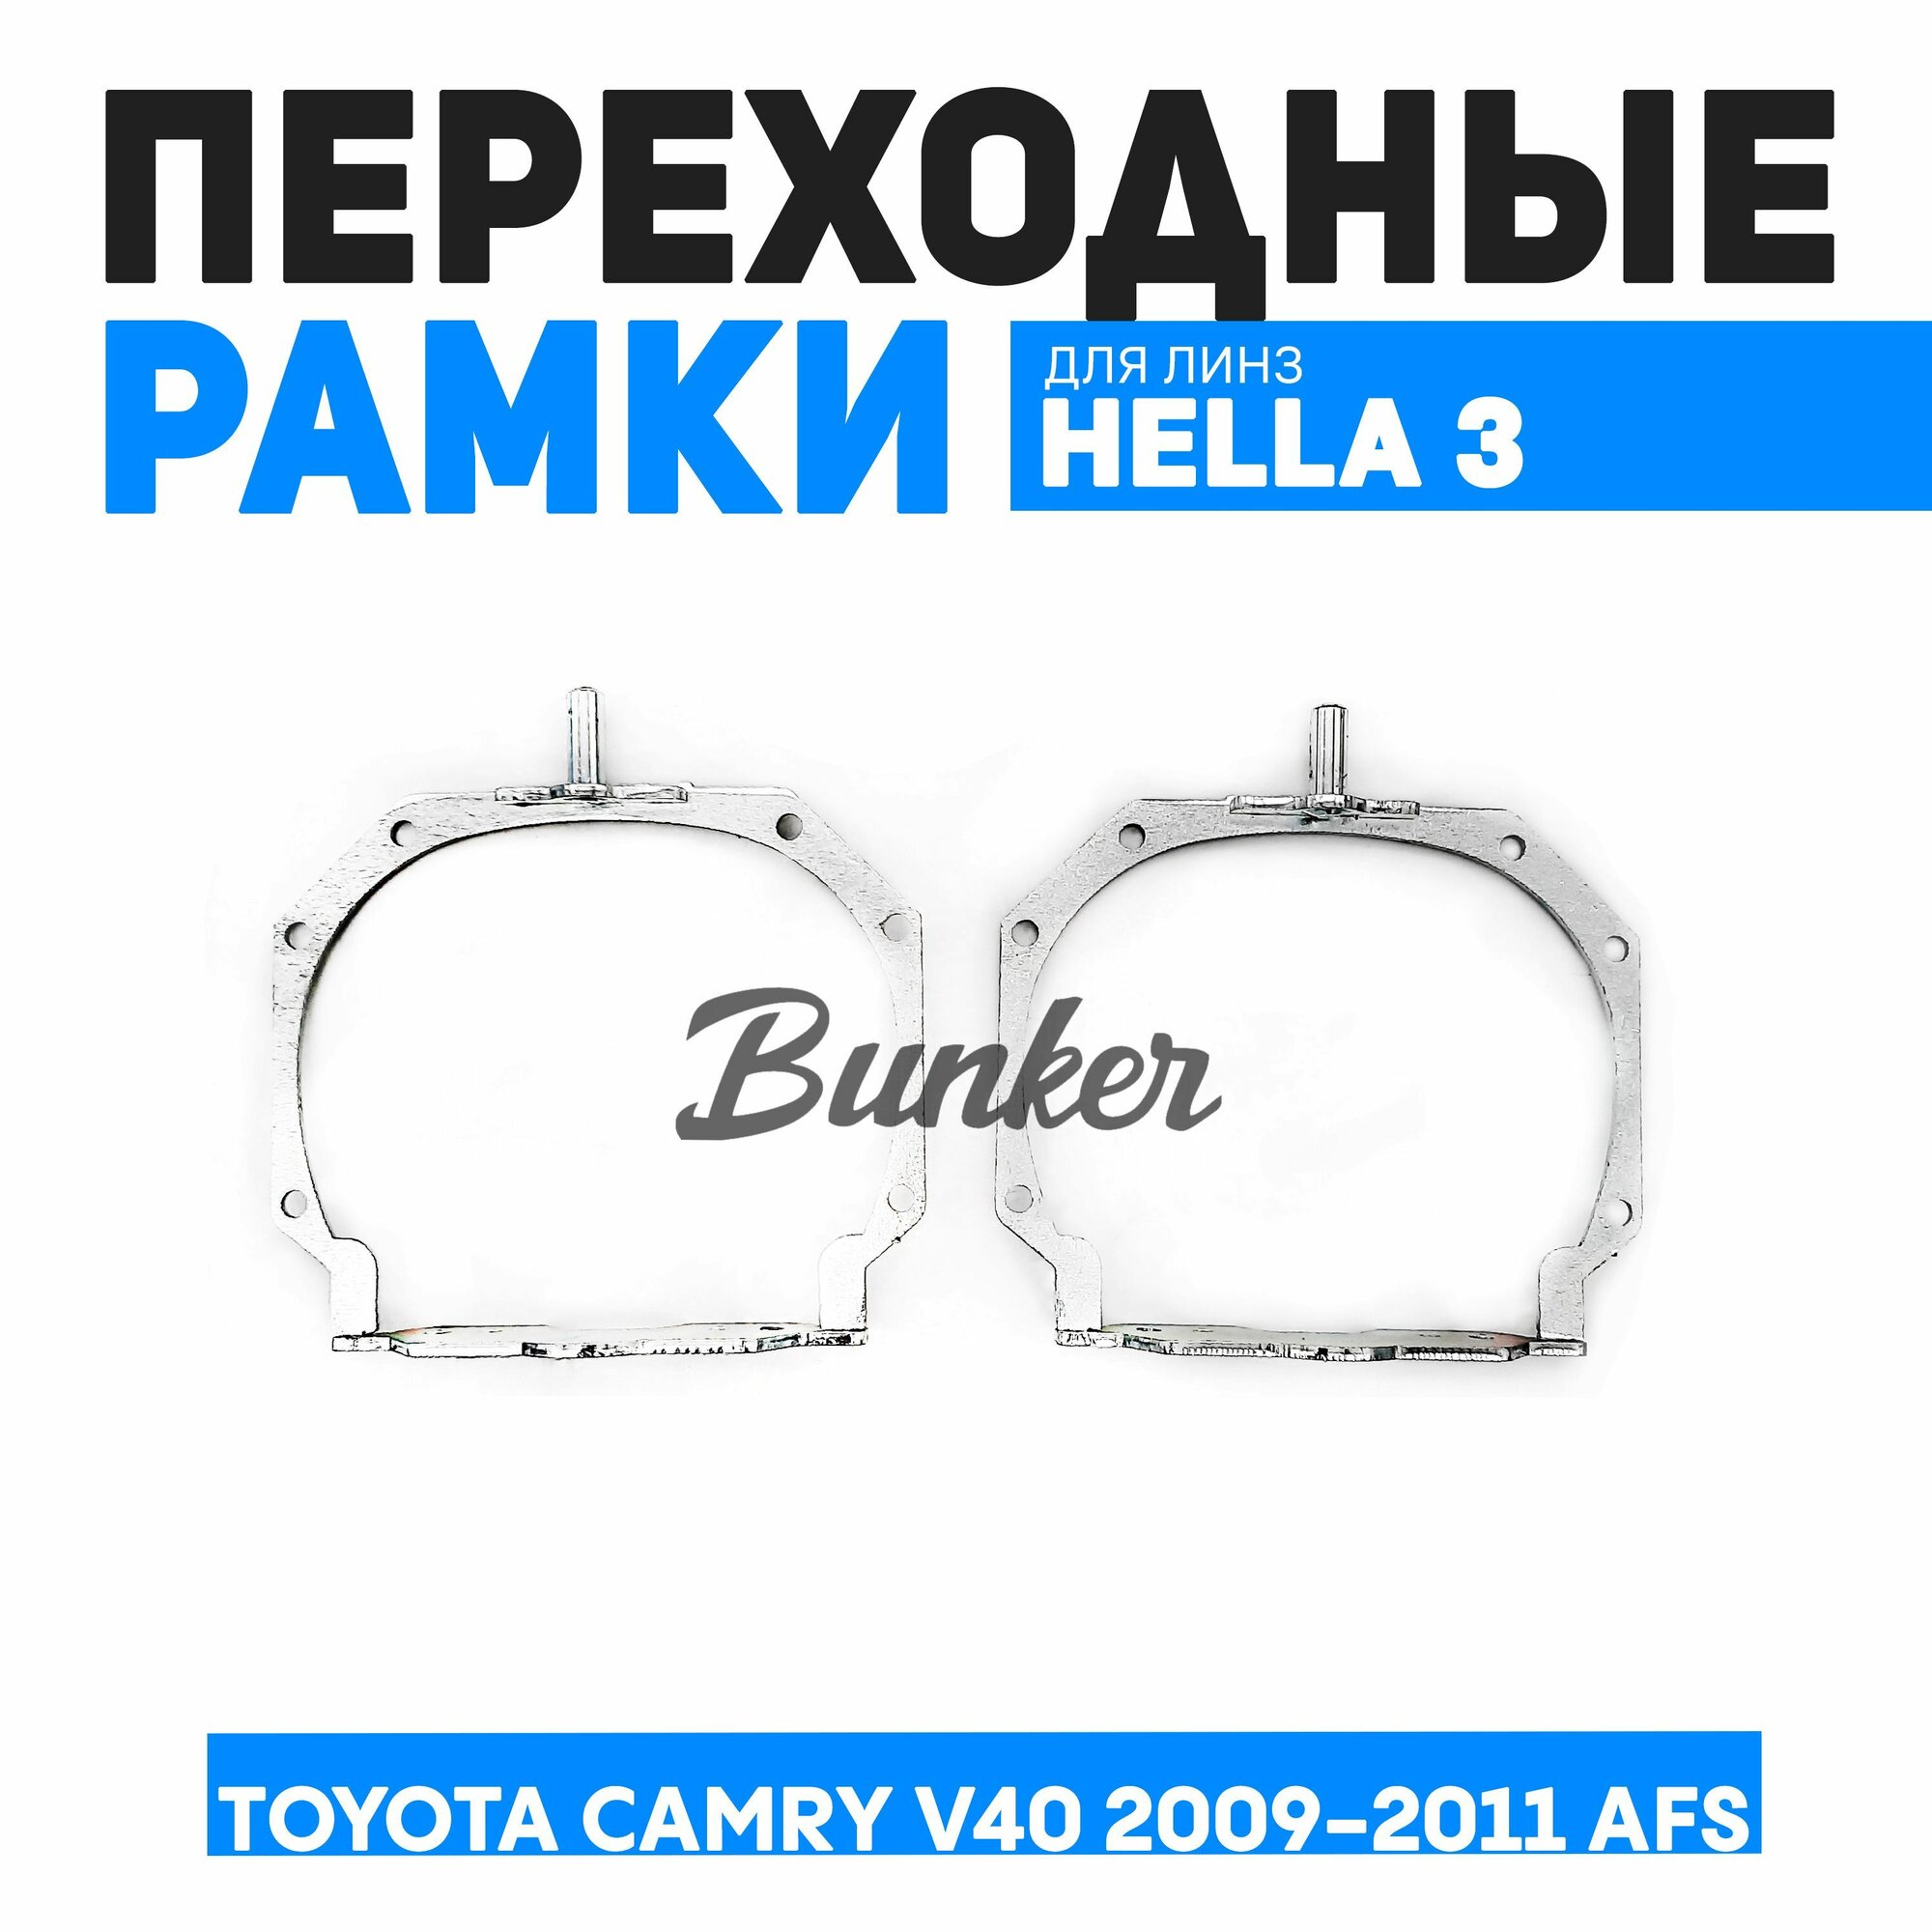 Переходные рамки для замены линз Toyota Camry V40 рест. 2009-2011 AFS